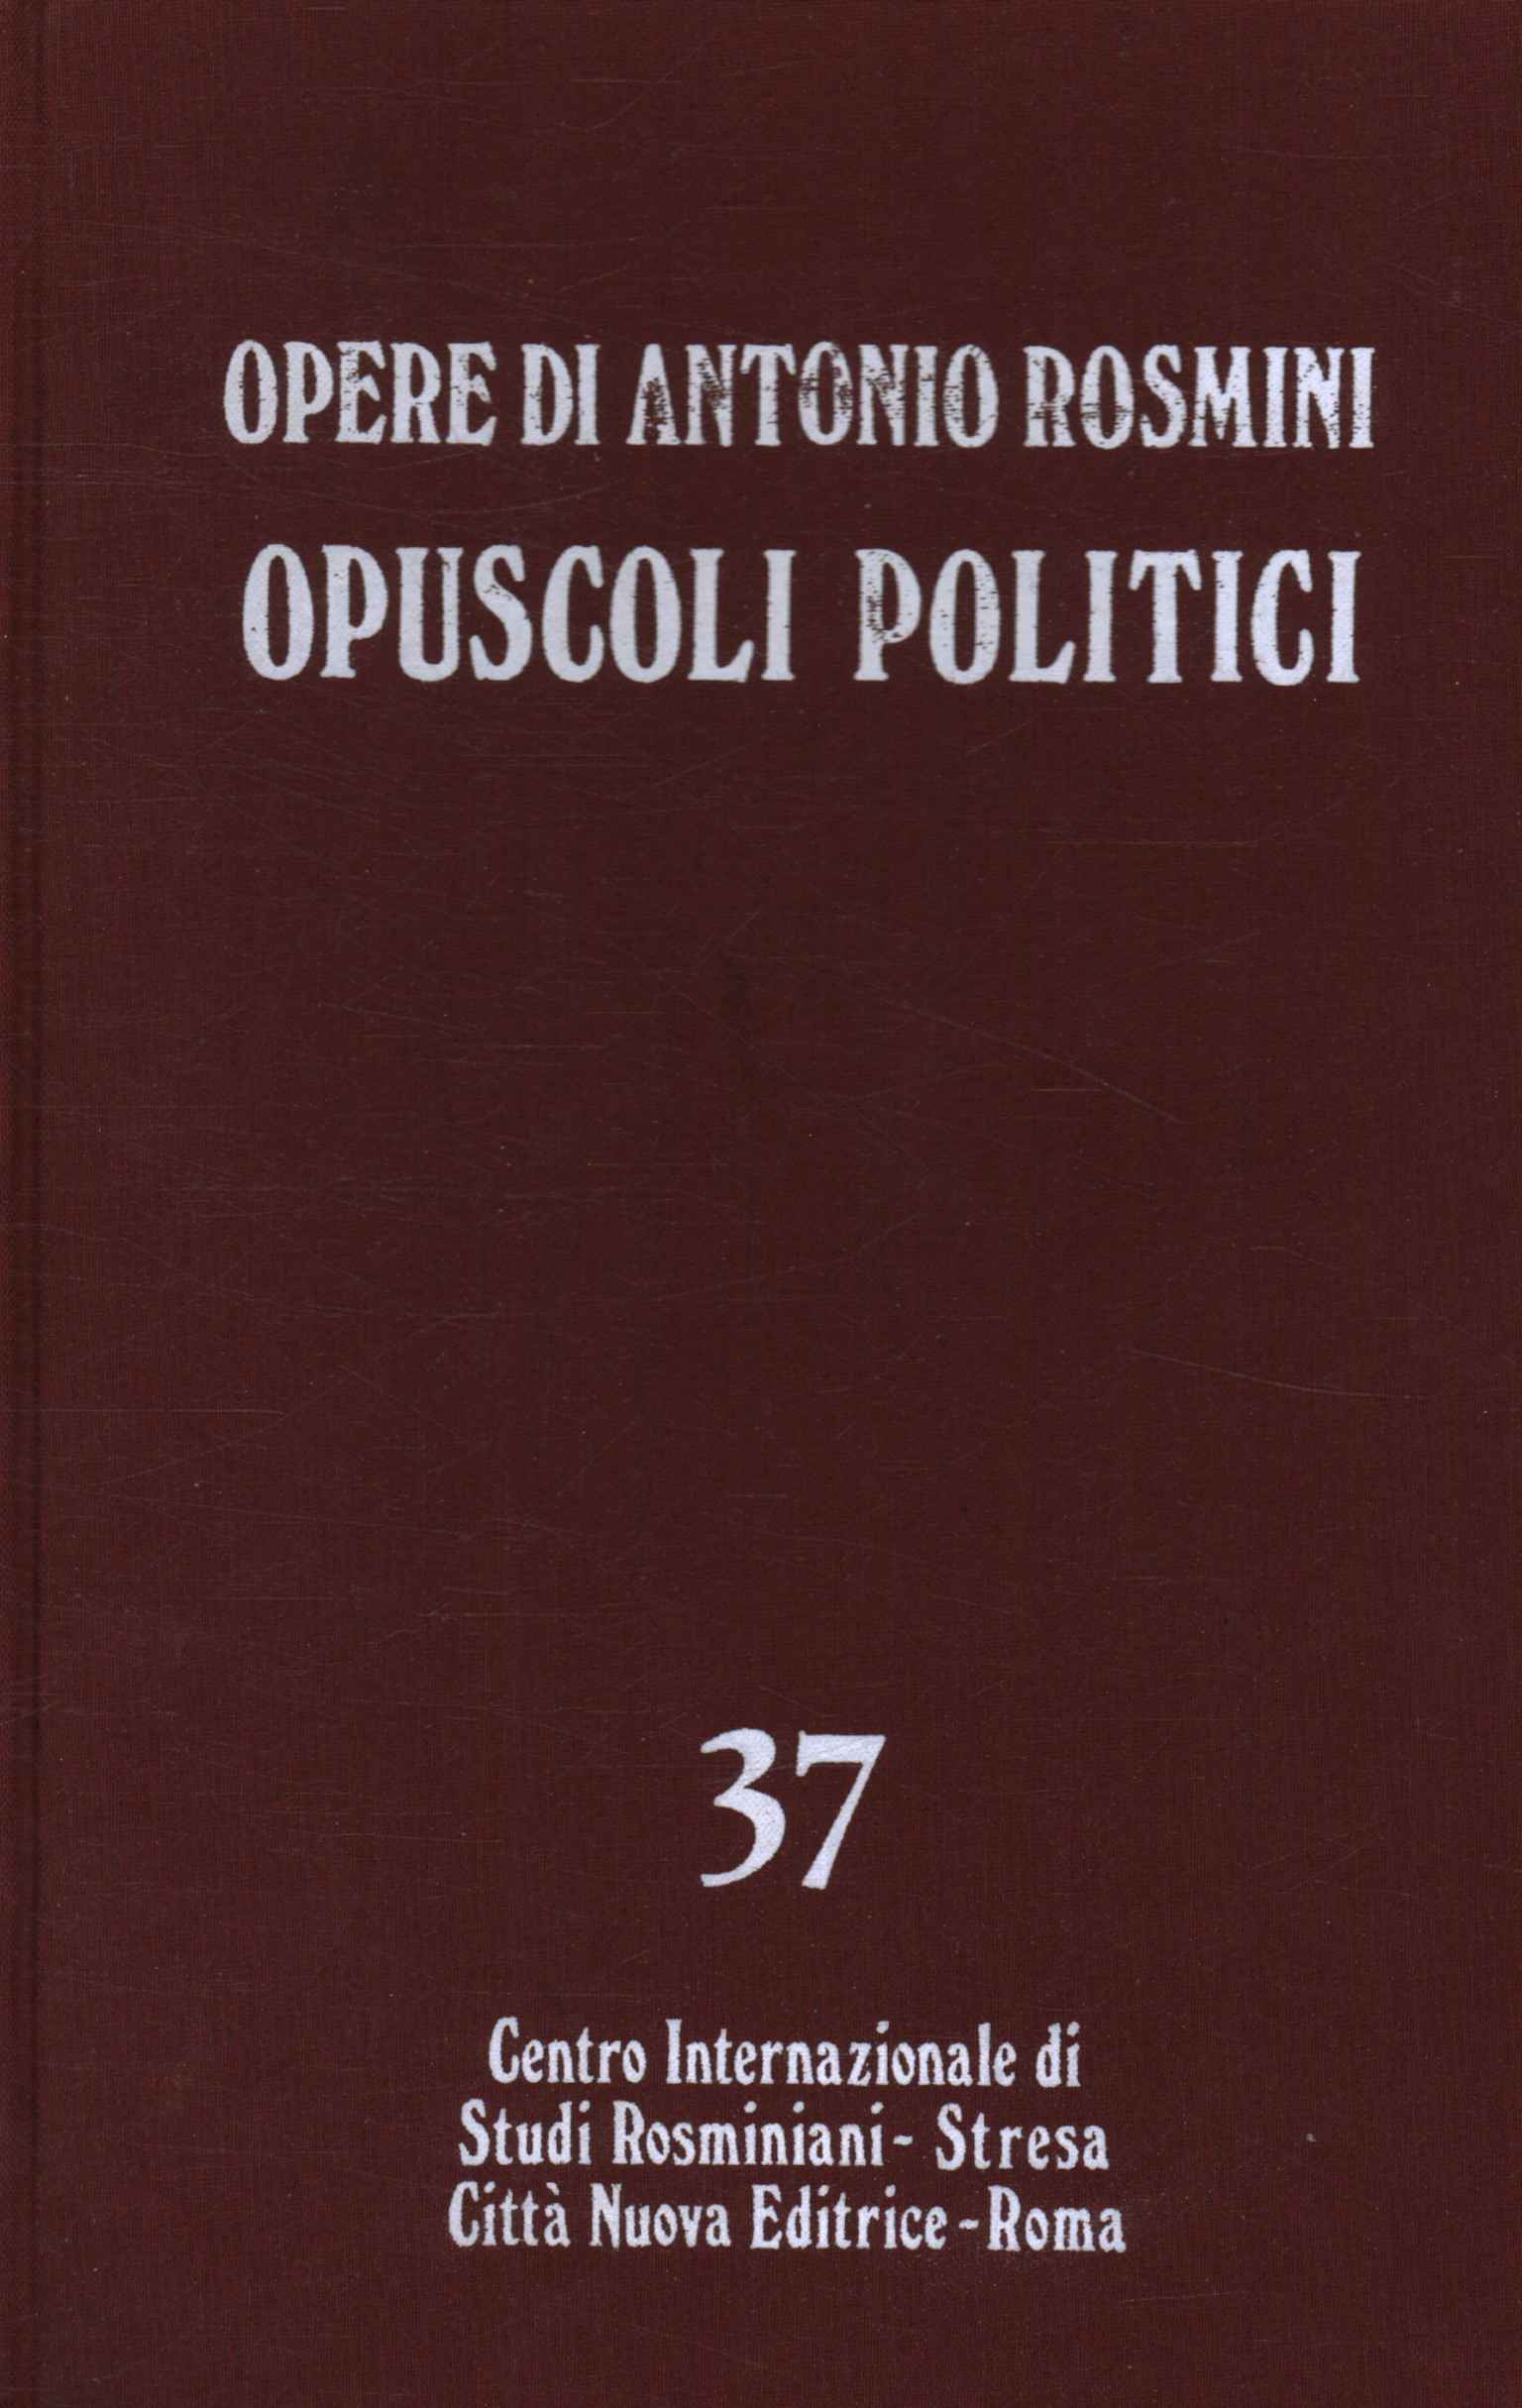 Werke von Antonio Rosmini. Politische Broschüren